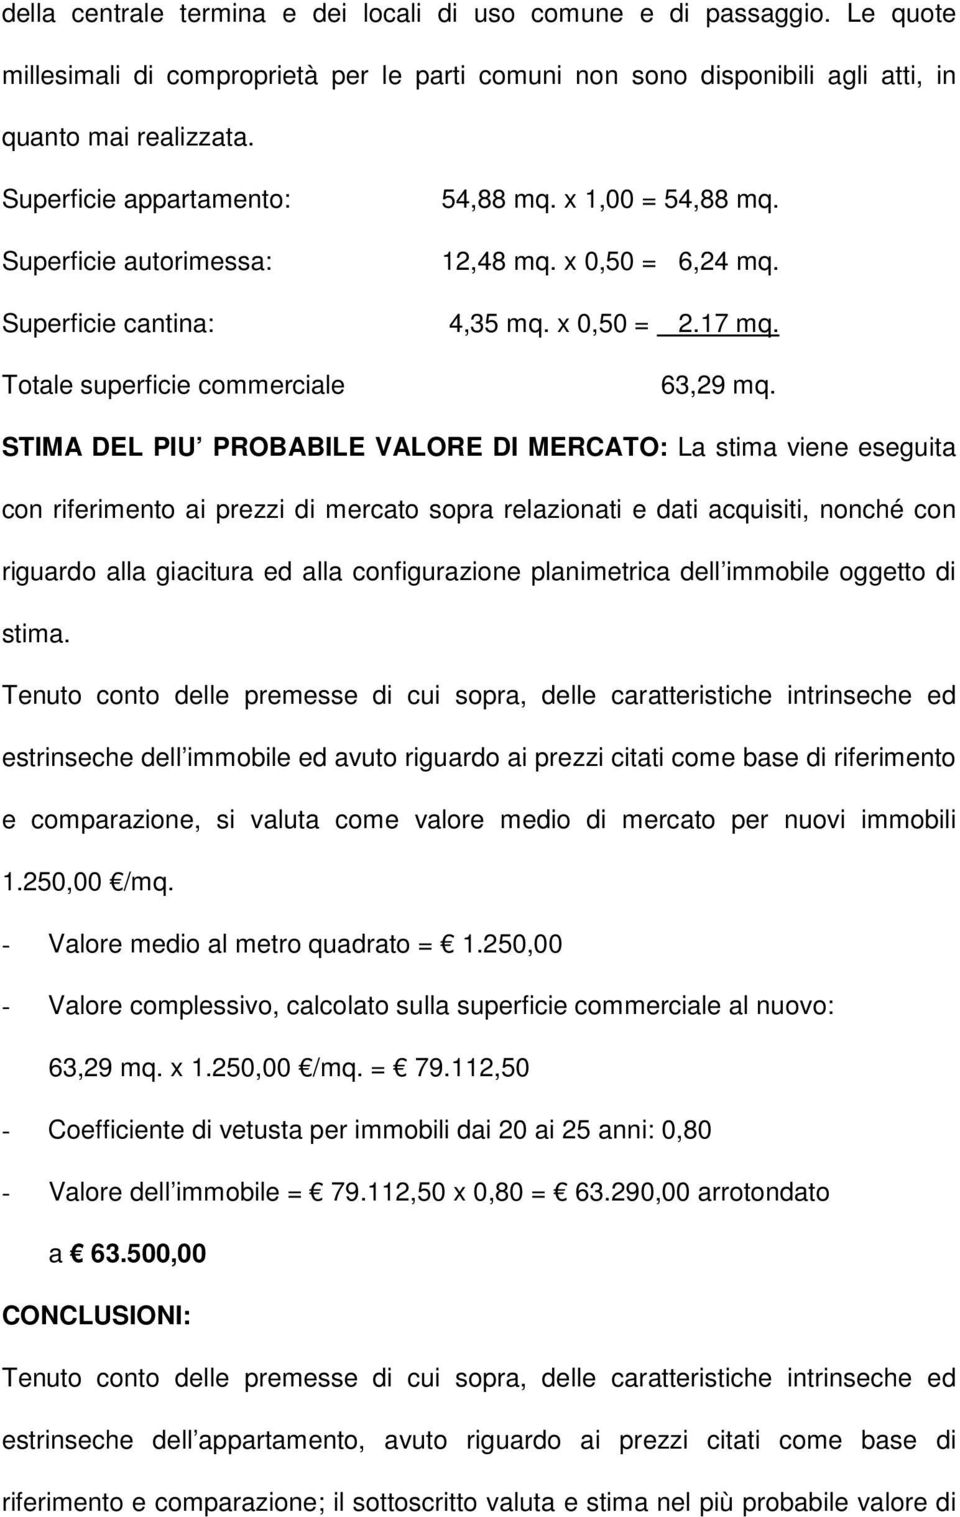 STIMA DEL PIU PROBABILE VALORE DI MERCATO: La stima viene eseguita con riferimento ai prezzi di mercato sopra relazionati e dati acquisiti, nonché con riguardo alla giacitura ed alla configurazione